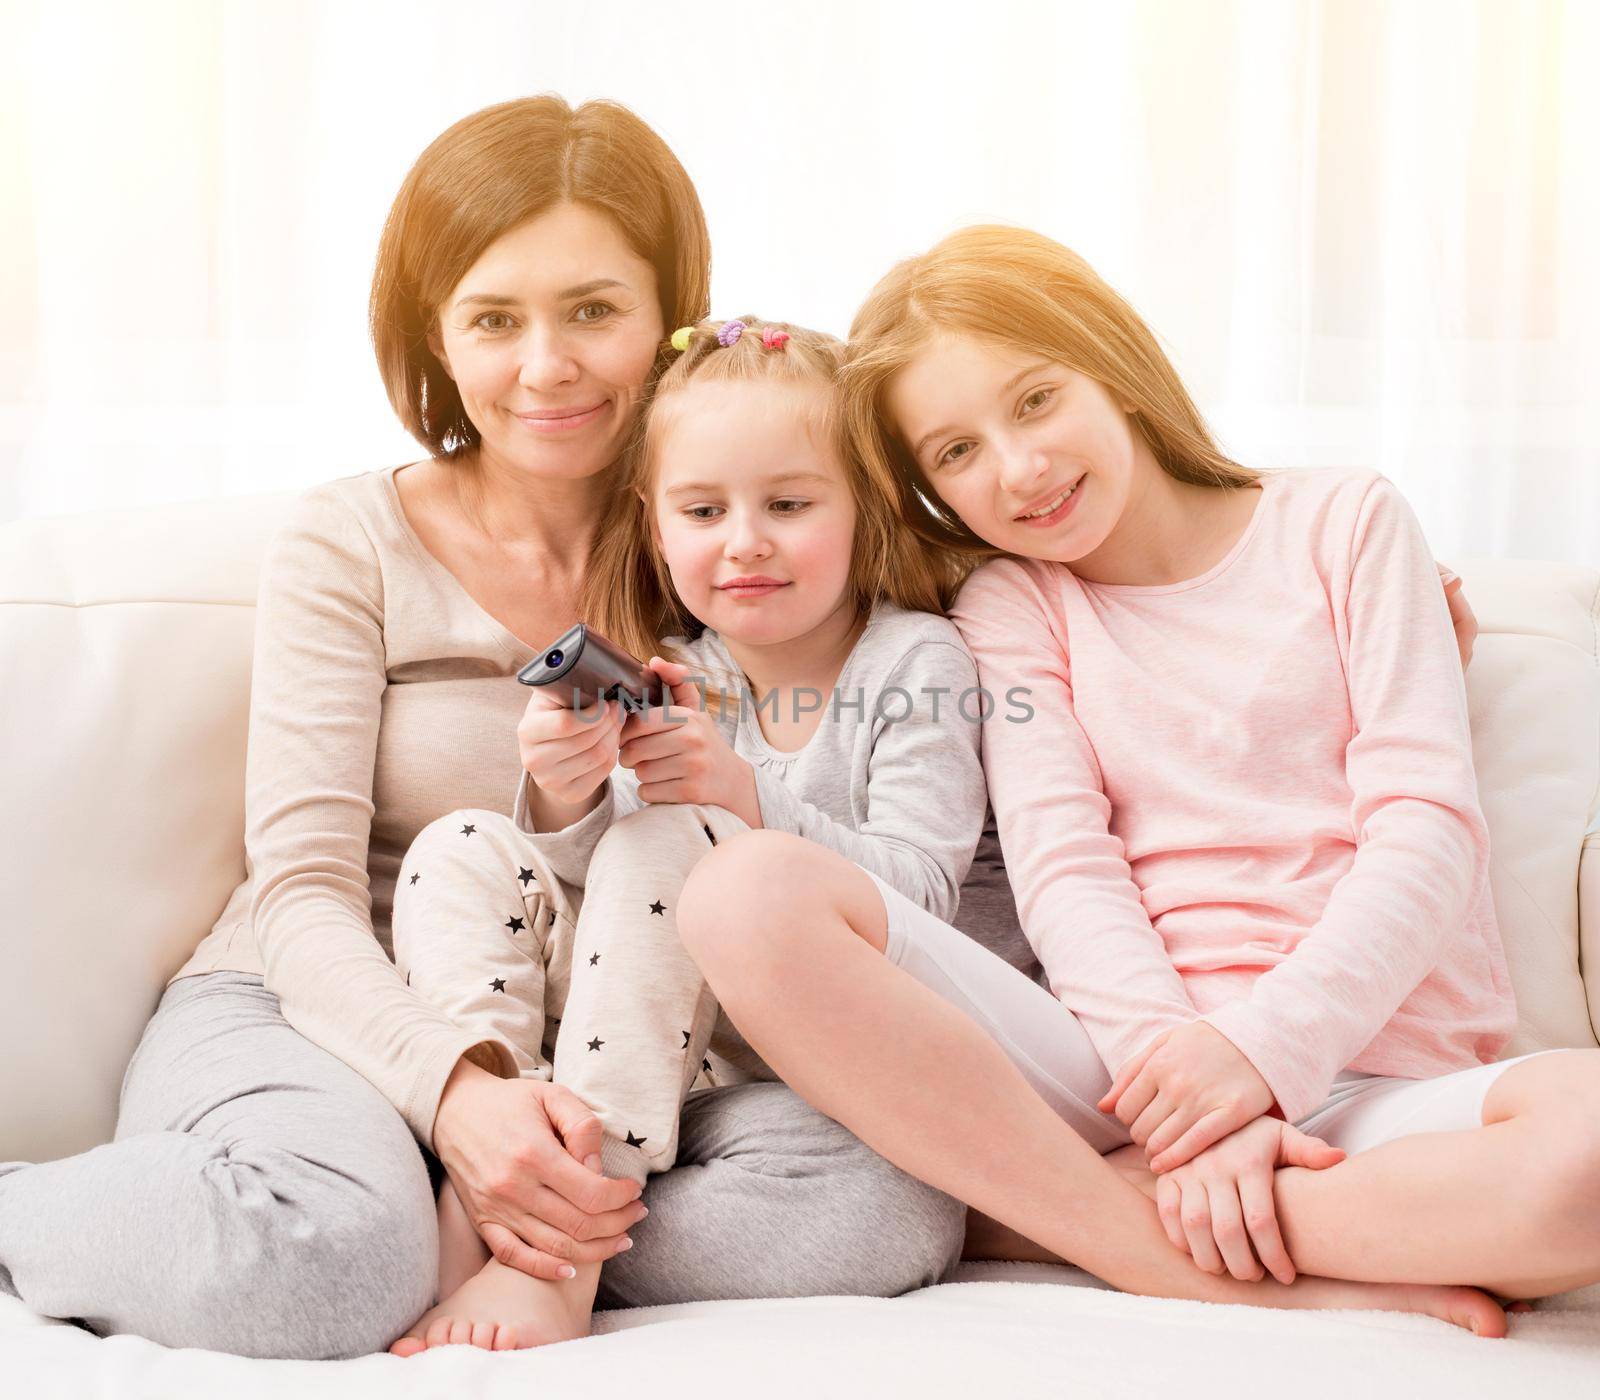 Mom hugging daughters while watching TV at home by GekaSkr